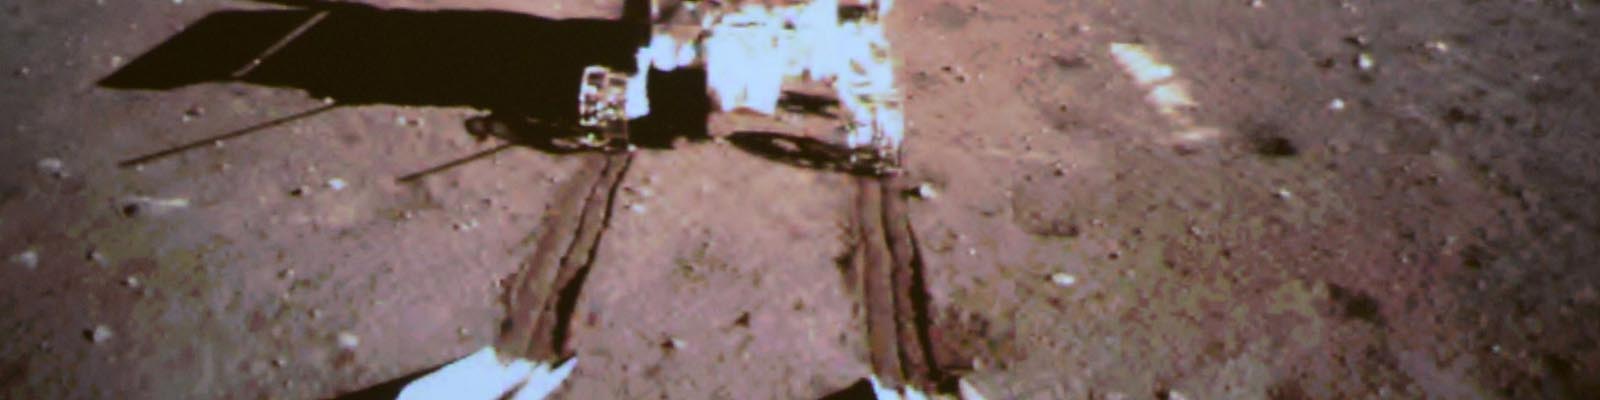 Le rover chinois Yutu roule sur la Lune